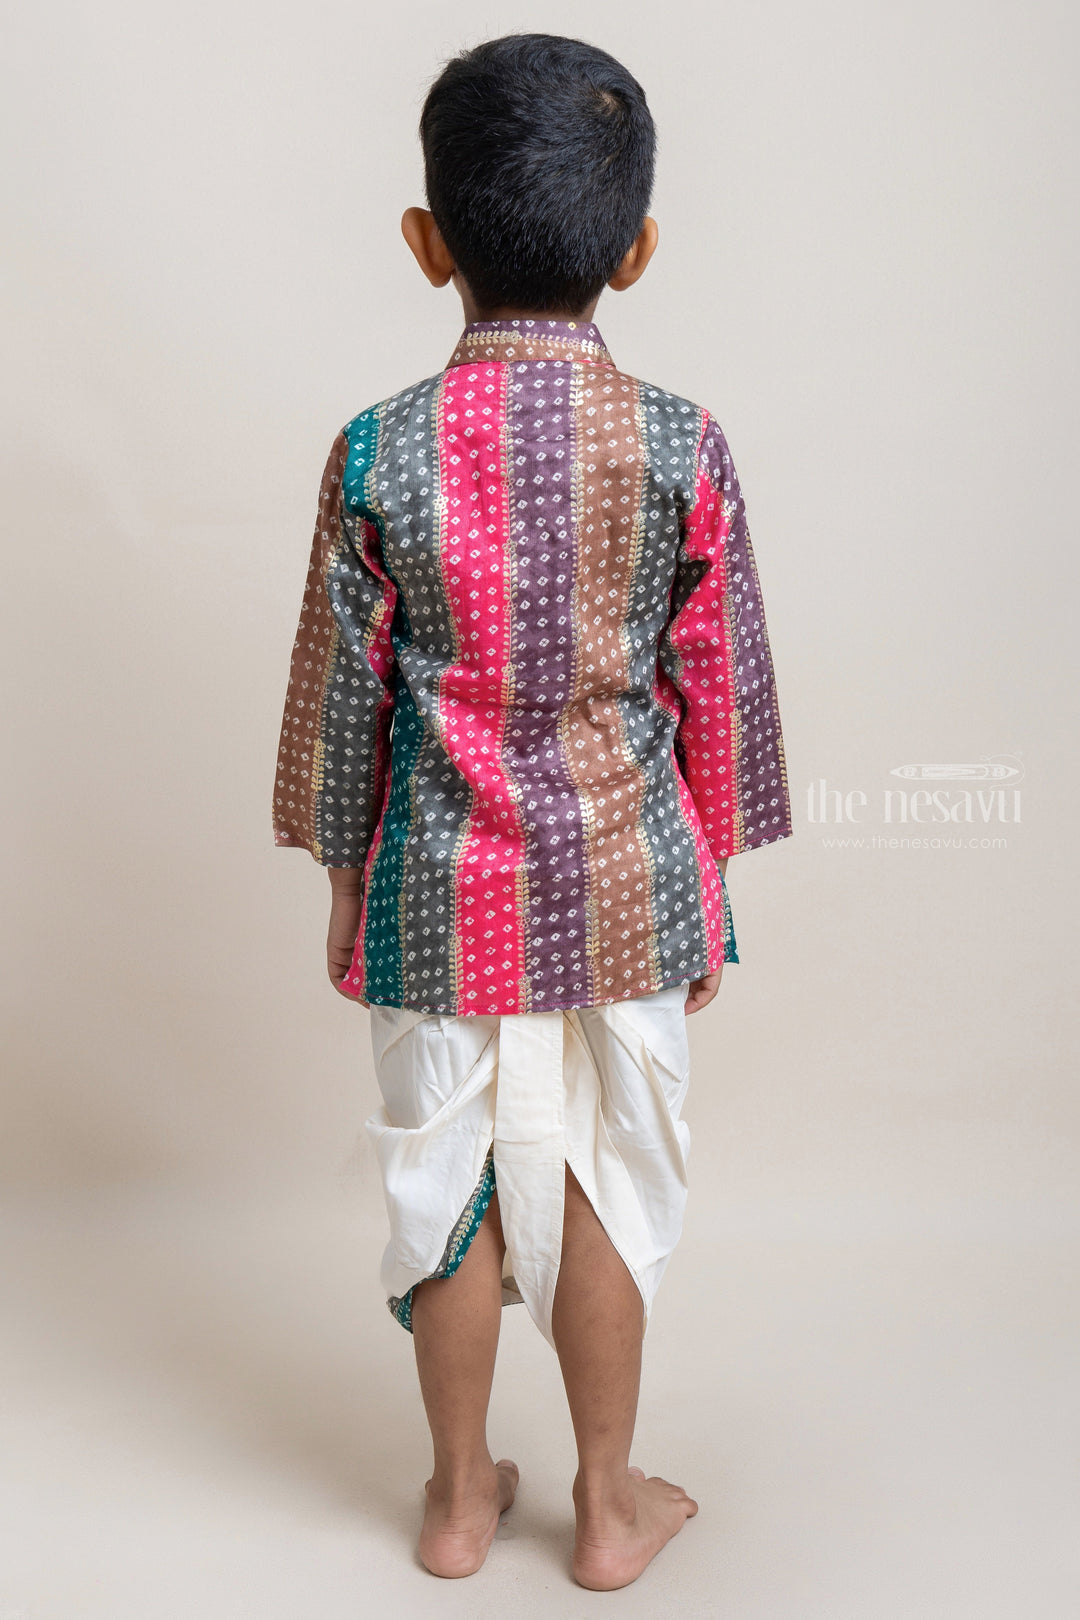 The Nesavu Boys Dothi Set Stylish Multi-colored Ethnic Kurta With White Dhoti For Little Boys Nesavu Premium Ethnic Wear for Boys | Latest Kurta collection | The Nesavu